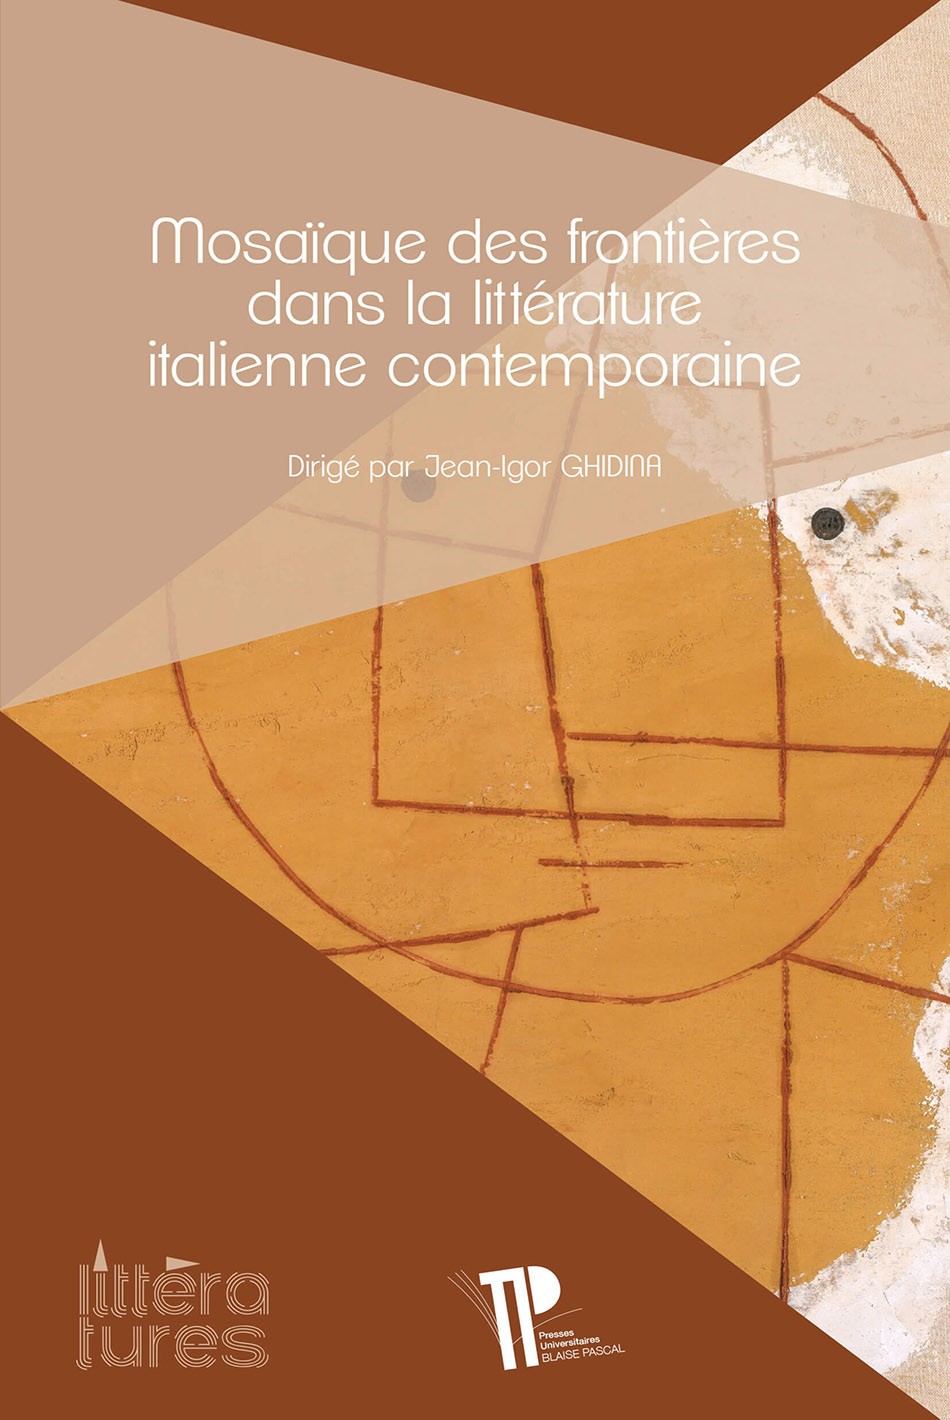 Mosaïques des frontières dans la littérature italienne contemporaine